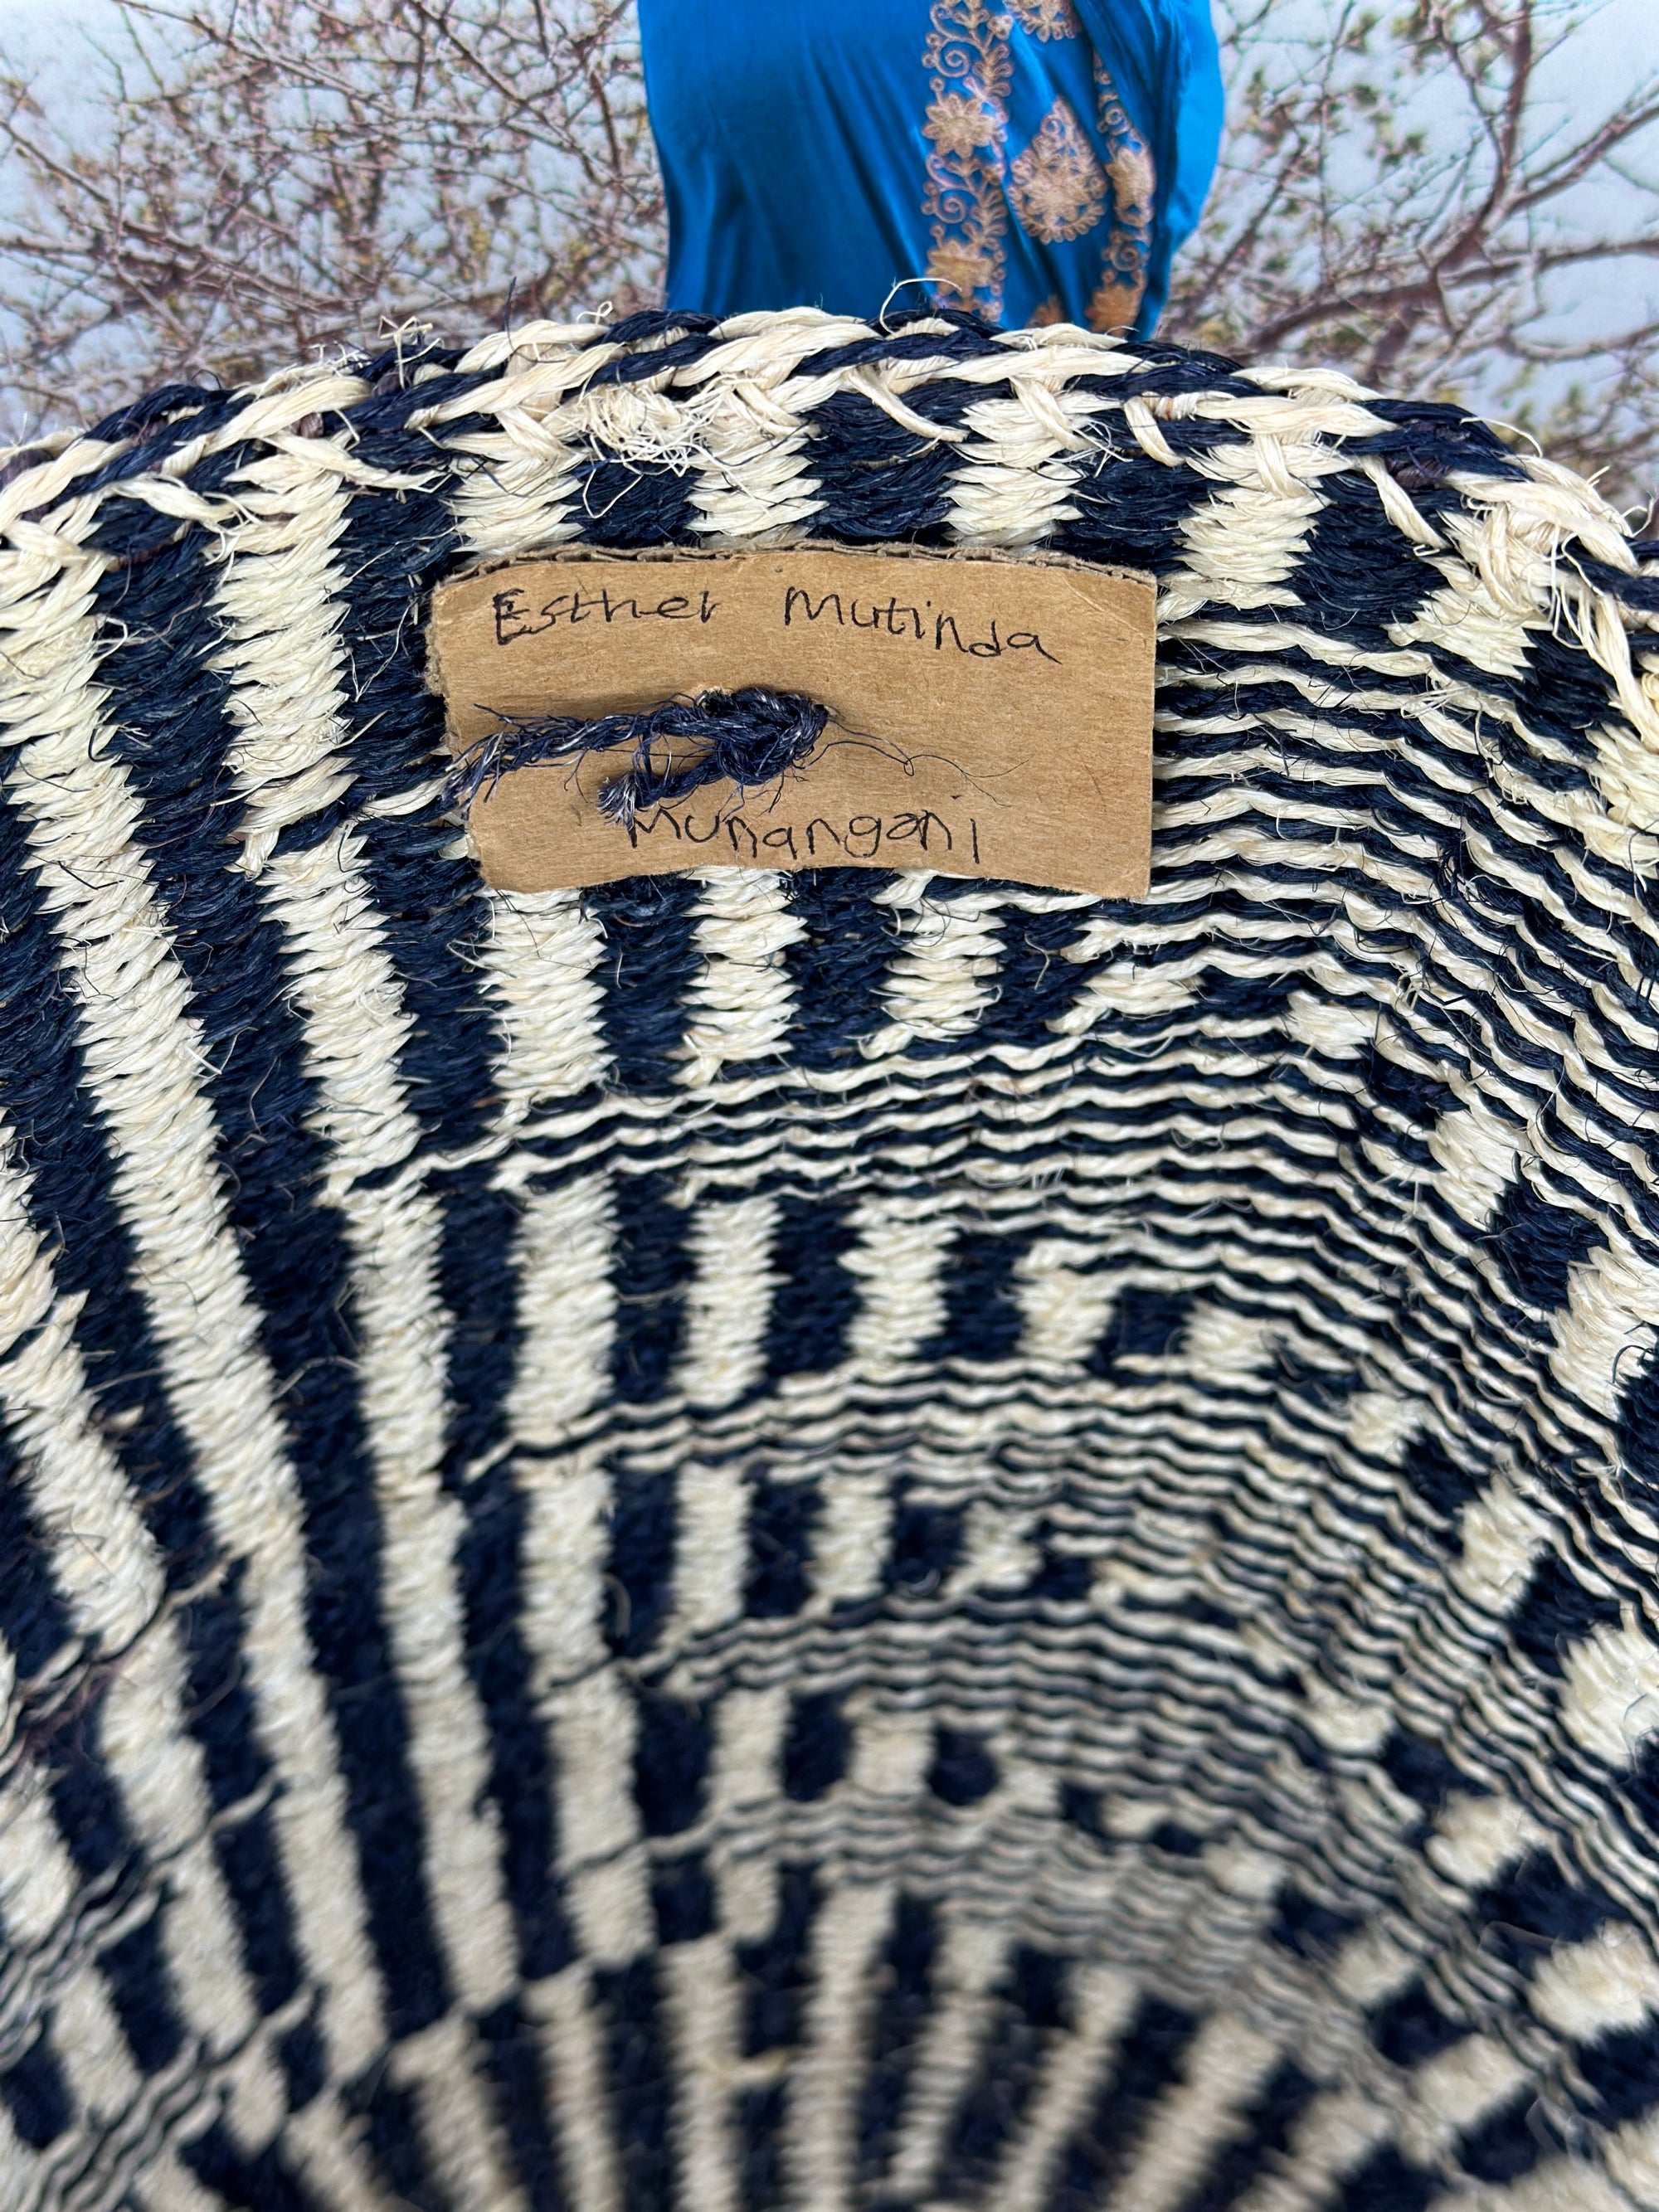 Sisal Thick Weave Bag | Zebra - Zawadisha